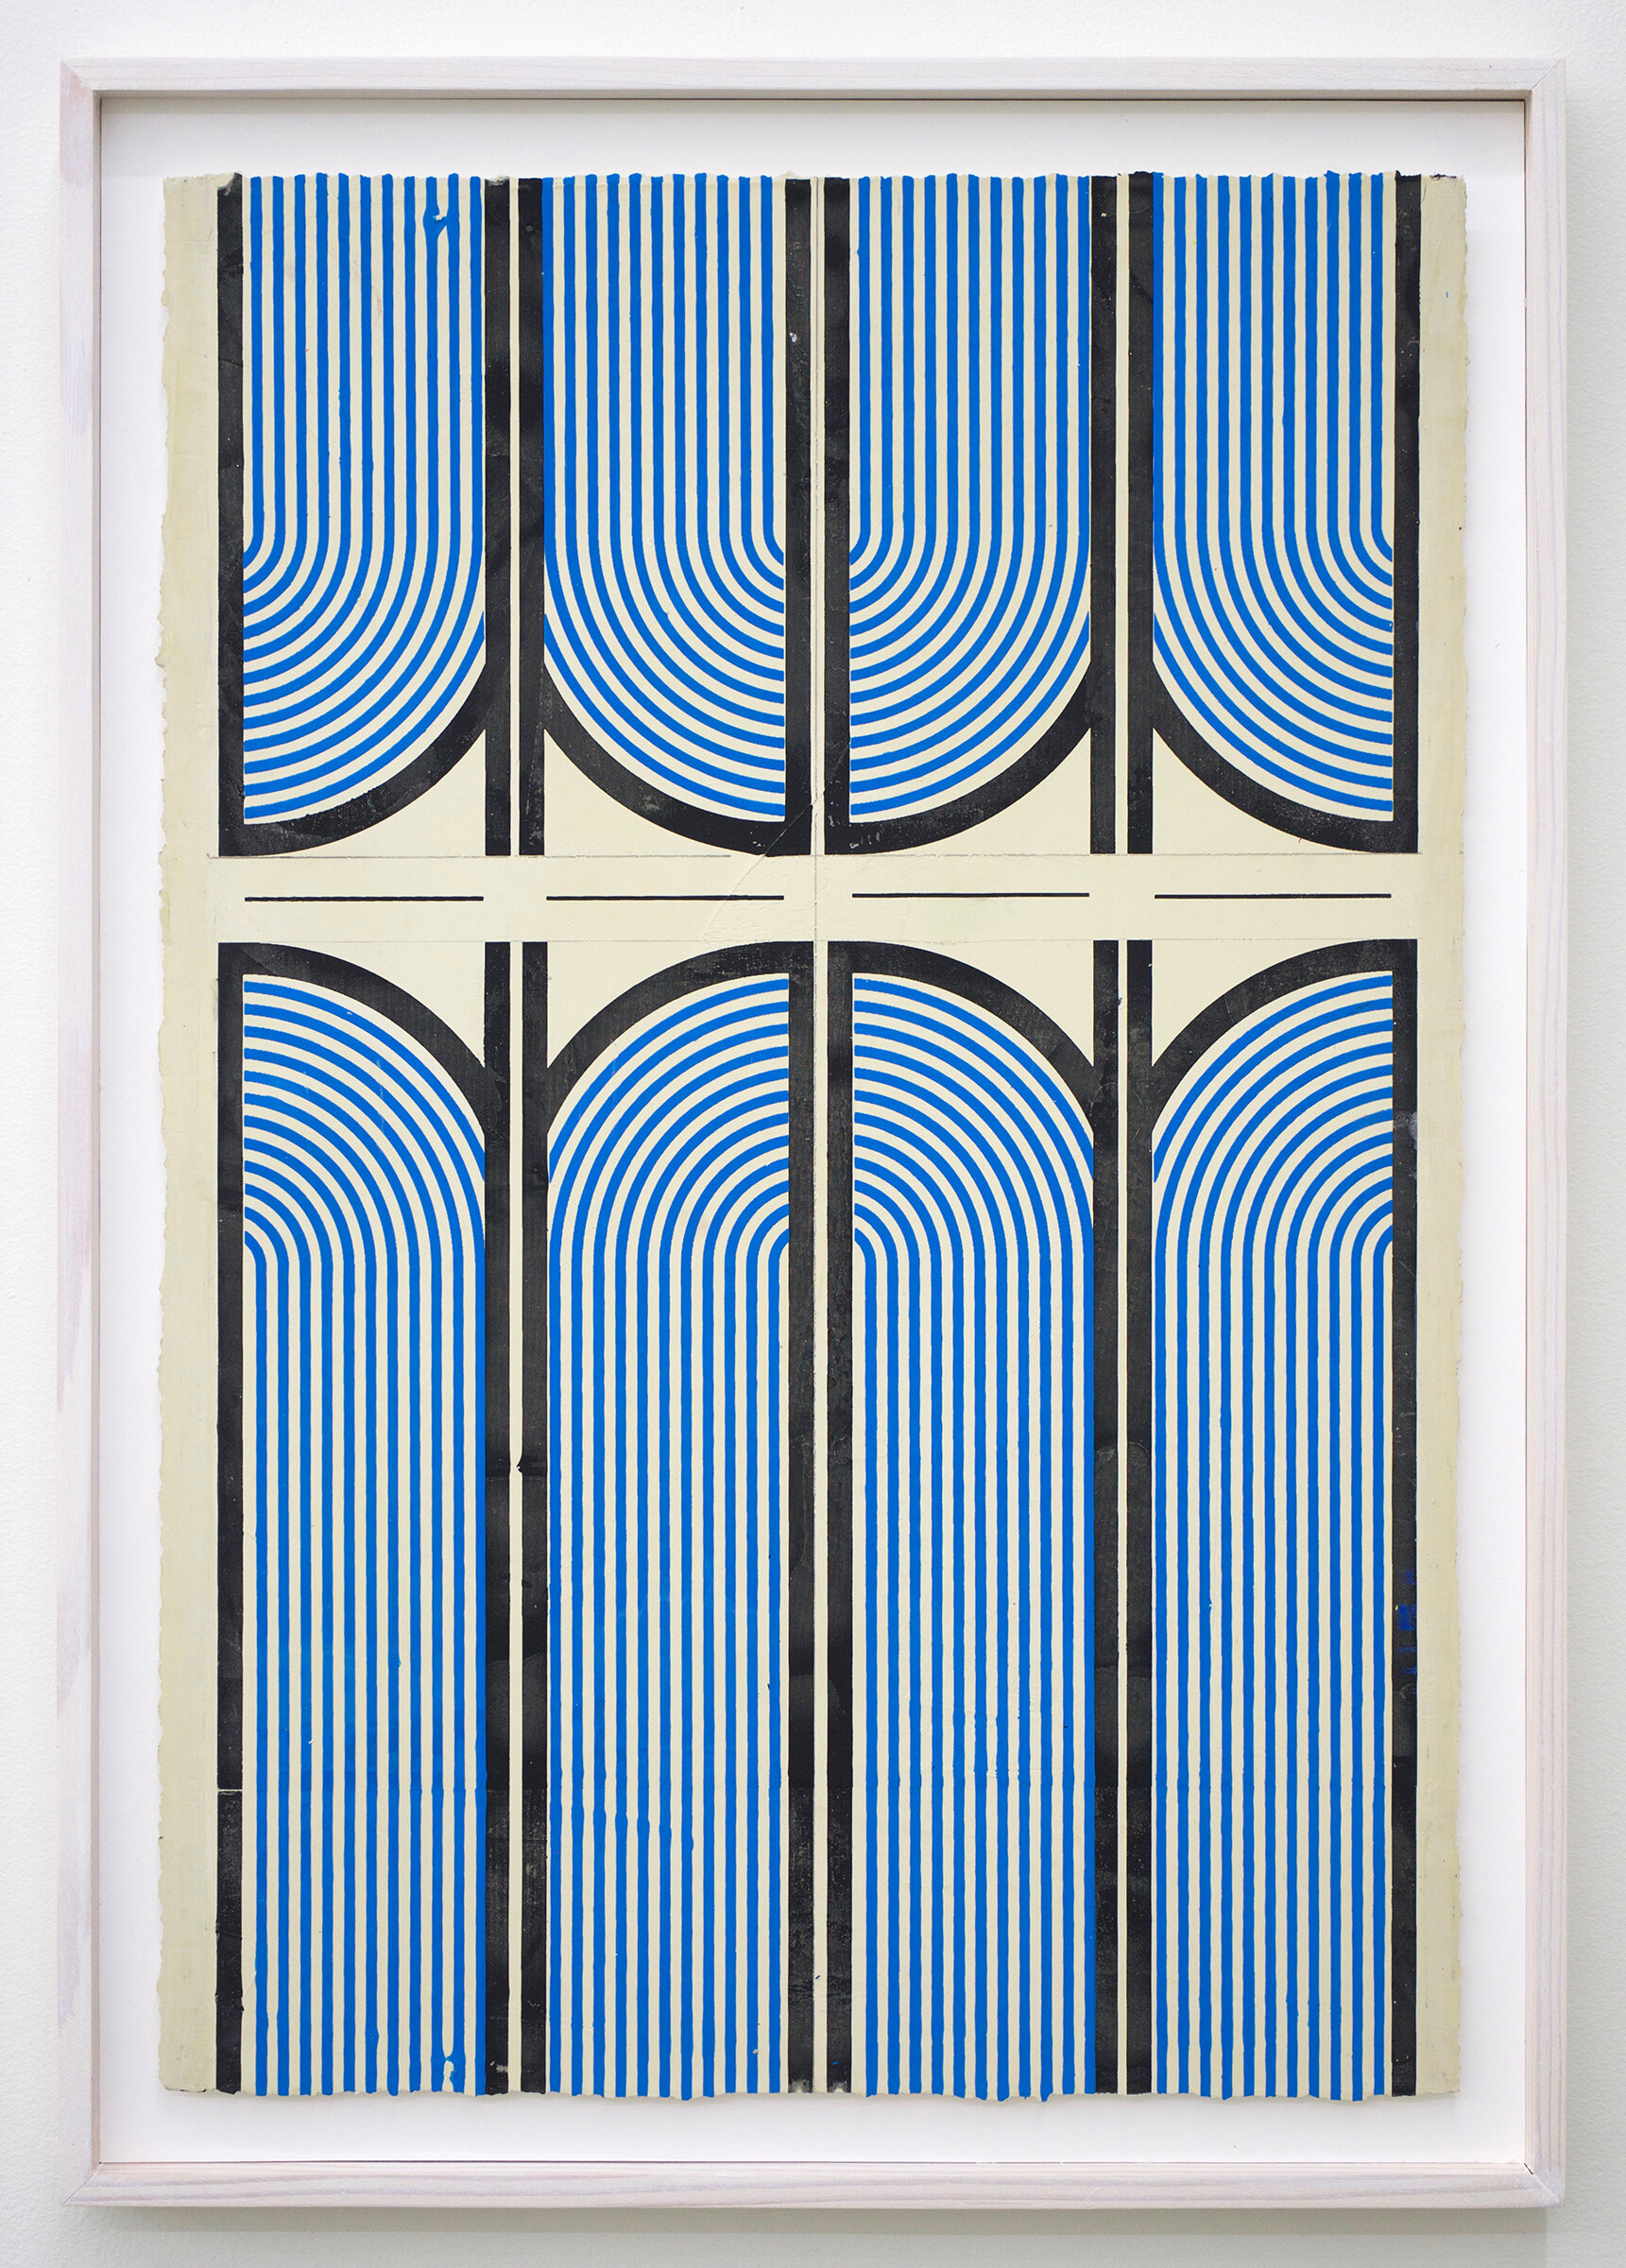  ELISE FERGUSON    Clamp Morris , 2019 pigmented plaster on paper 24.75" x 17.25" (framed) 